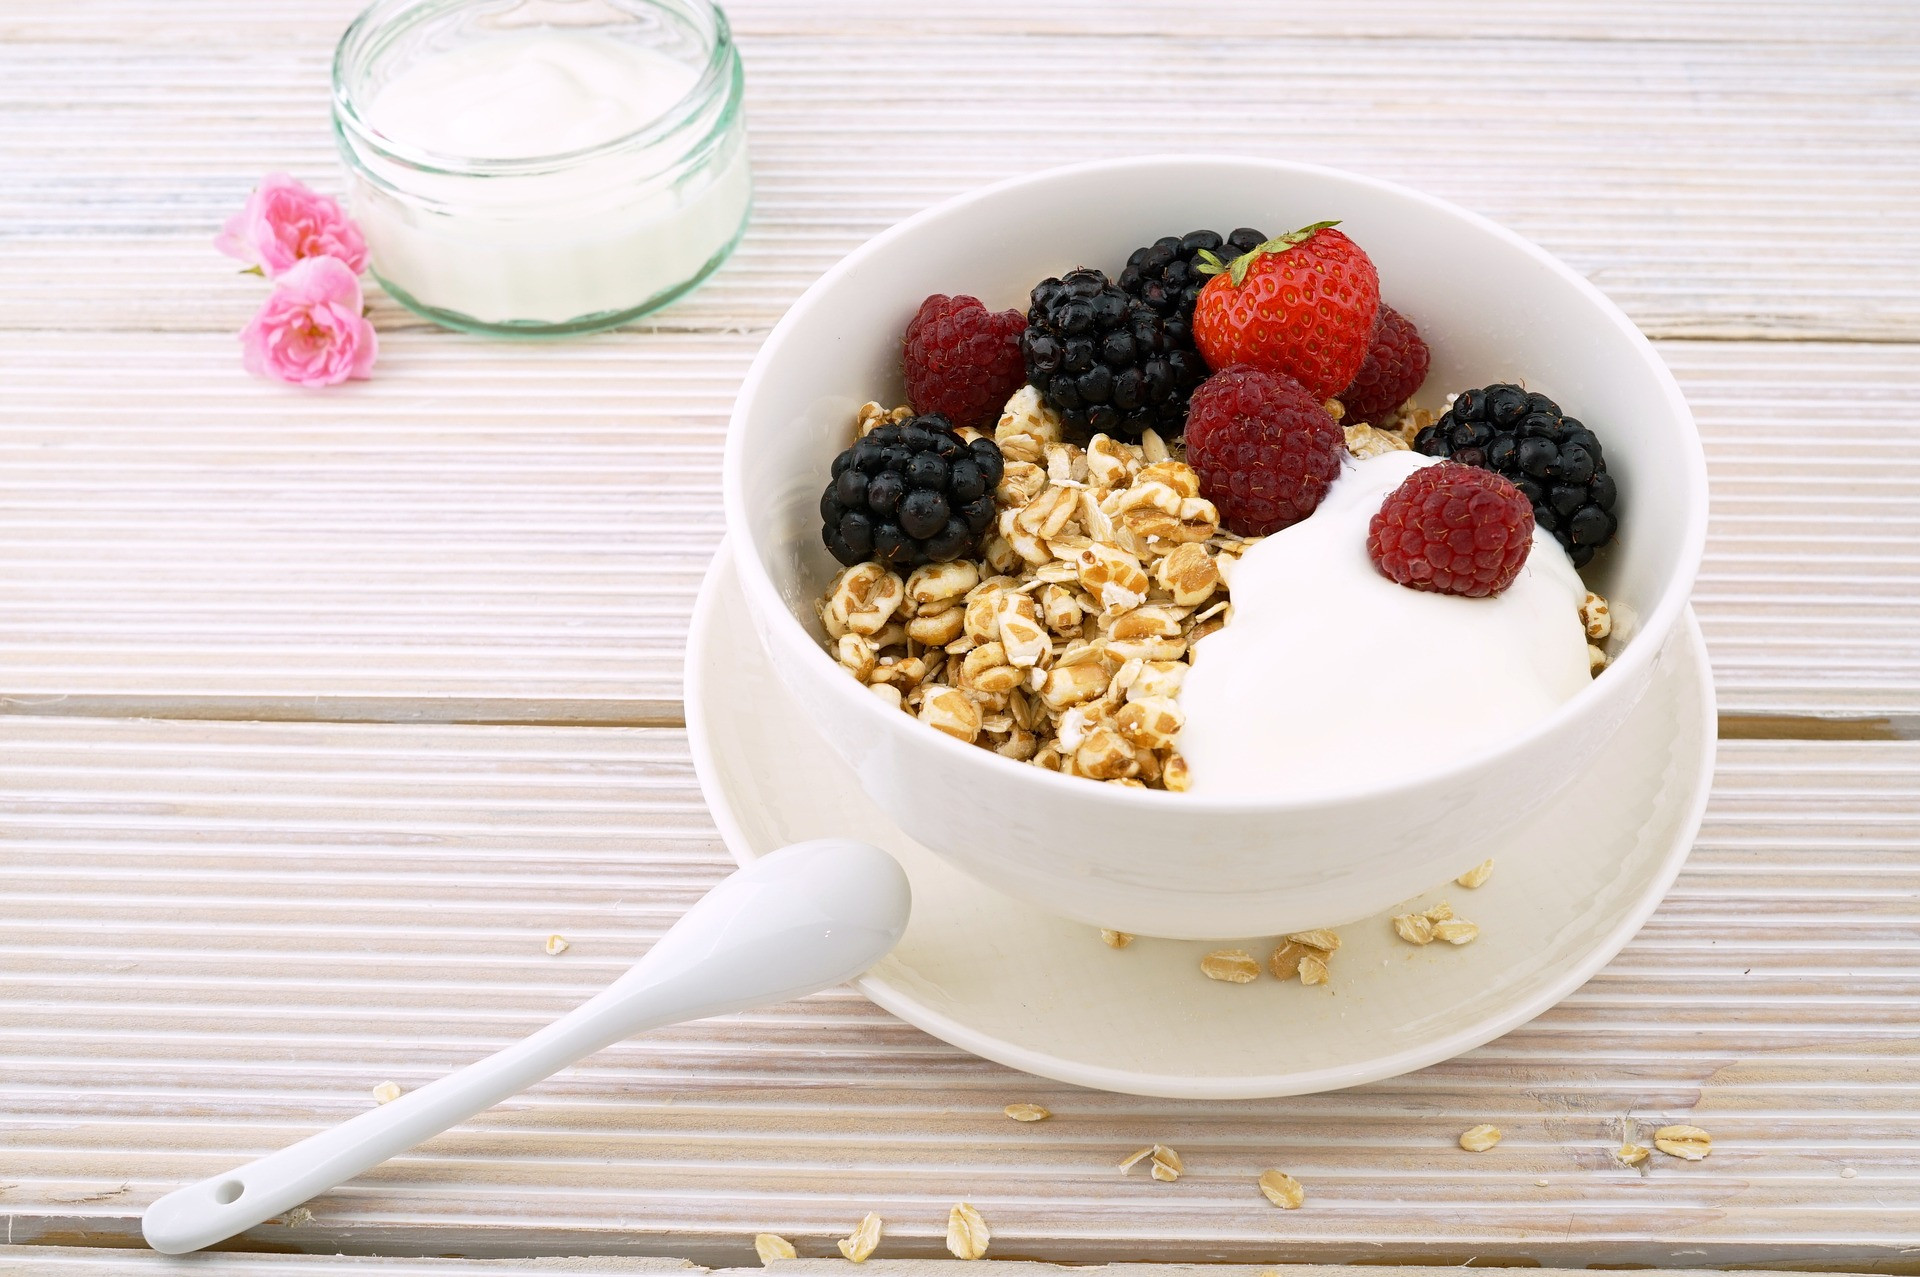 Robíte správnu vec, že jedávate ráno, pretože pravidelne naplánované jedlá udržujú váš metabolizmus v pohybe, ale mali by ste do nich pridať viac bielkovín. Podporujú svalovú hmotu. Pridajte 20 gramov bielkovín na raňajky, odporúča hovorkyňa Akadémie výživy a dietetiky Jessica Crandall.